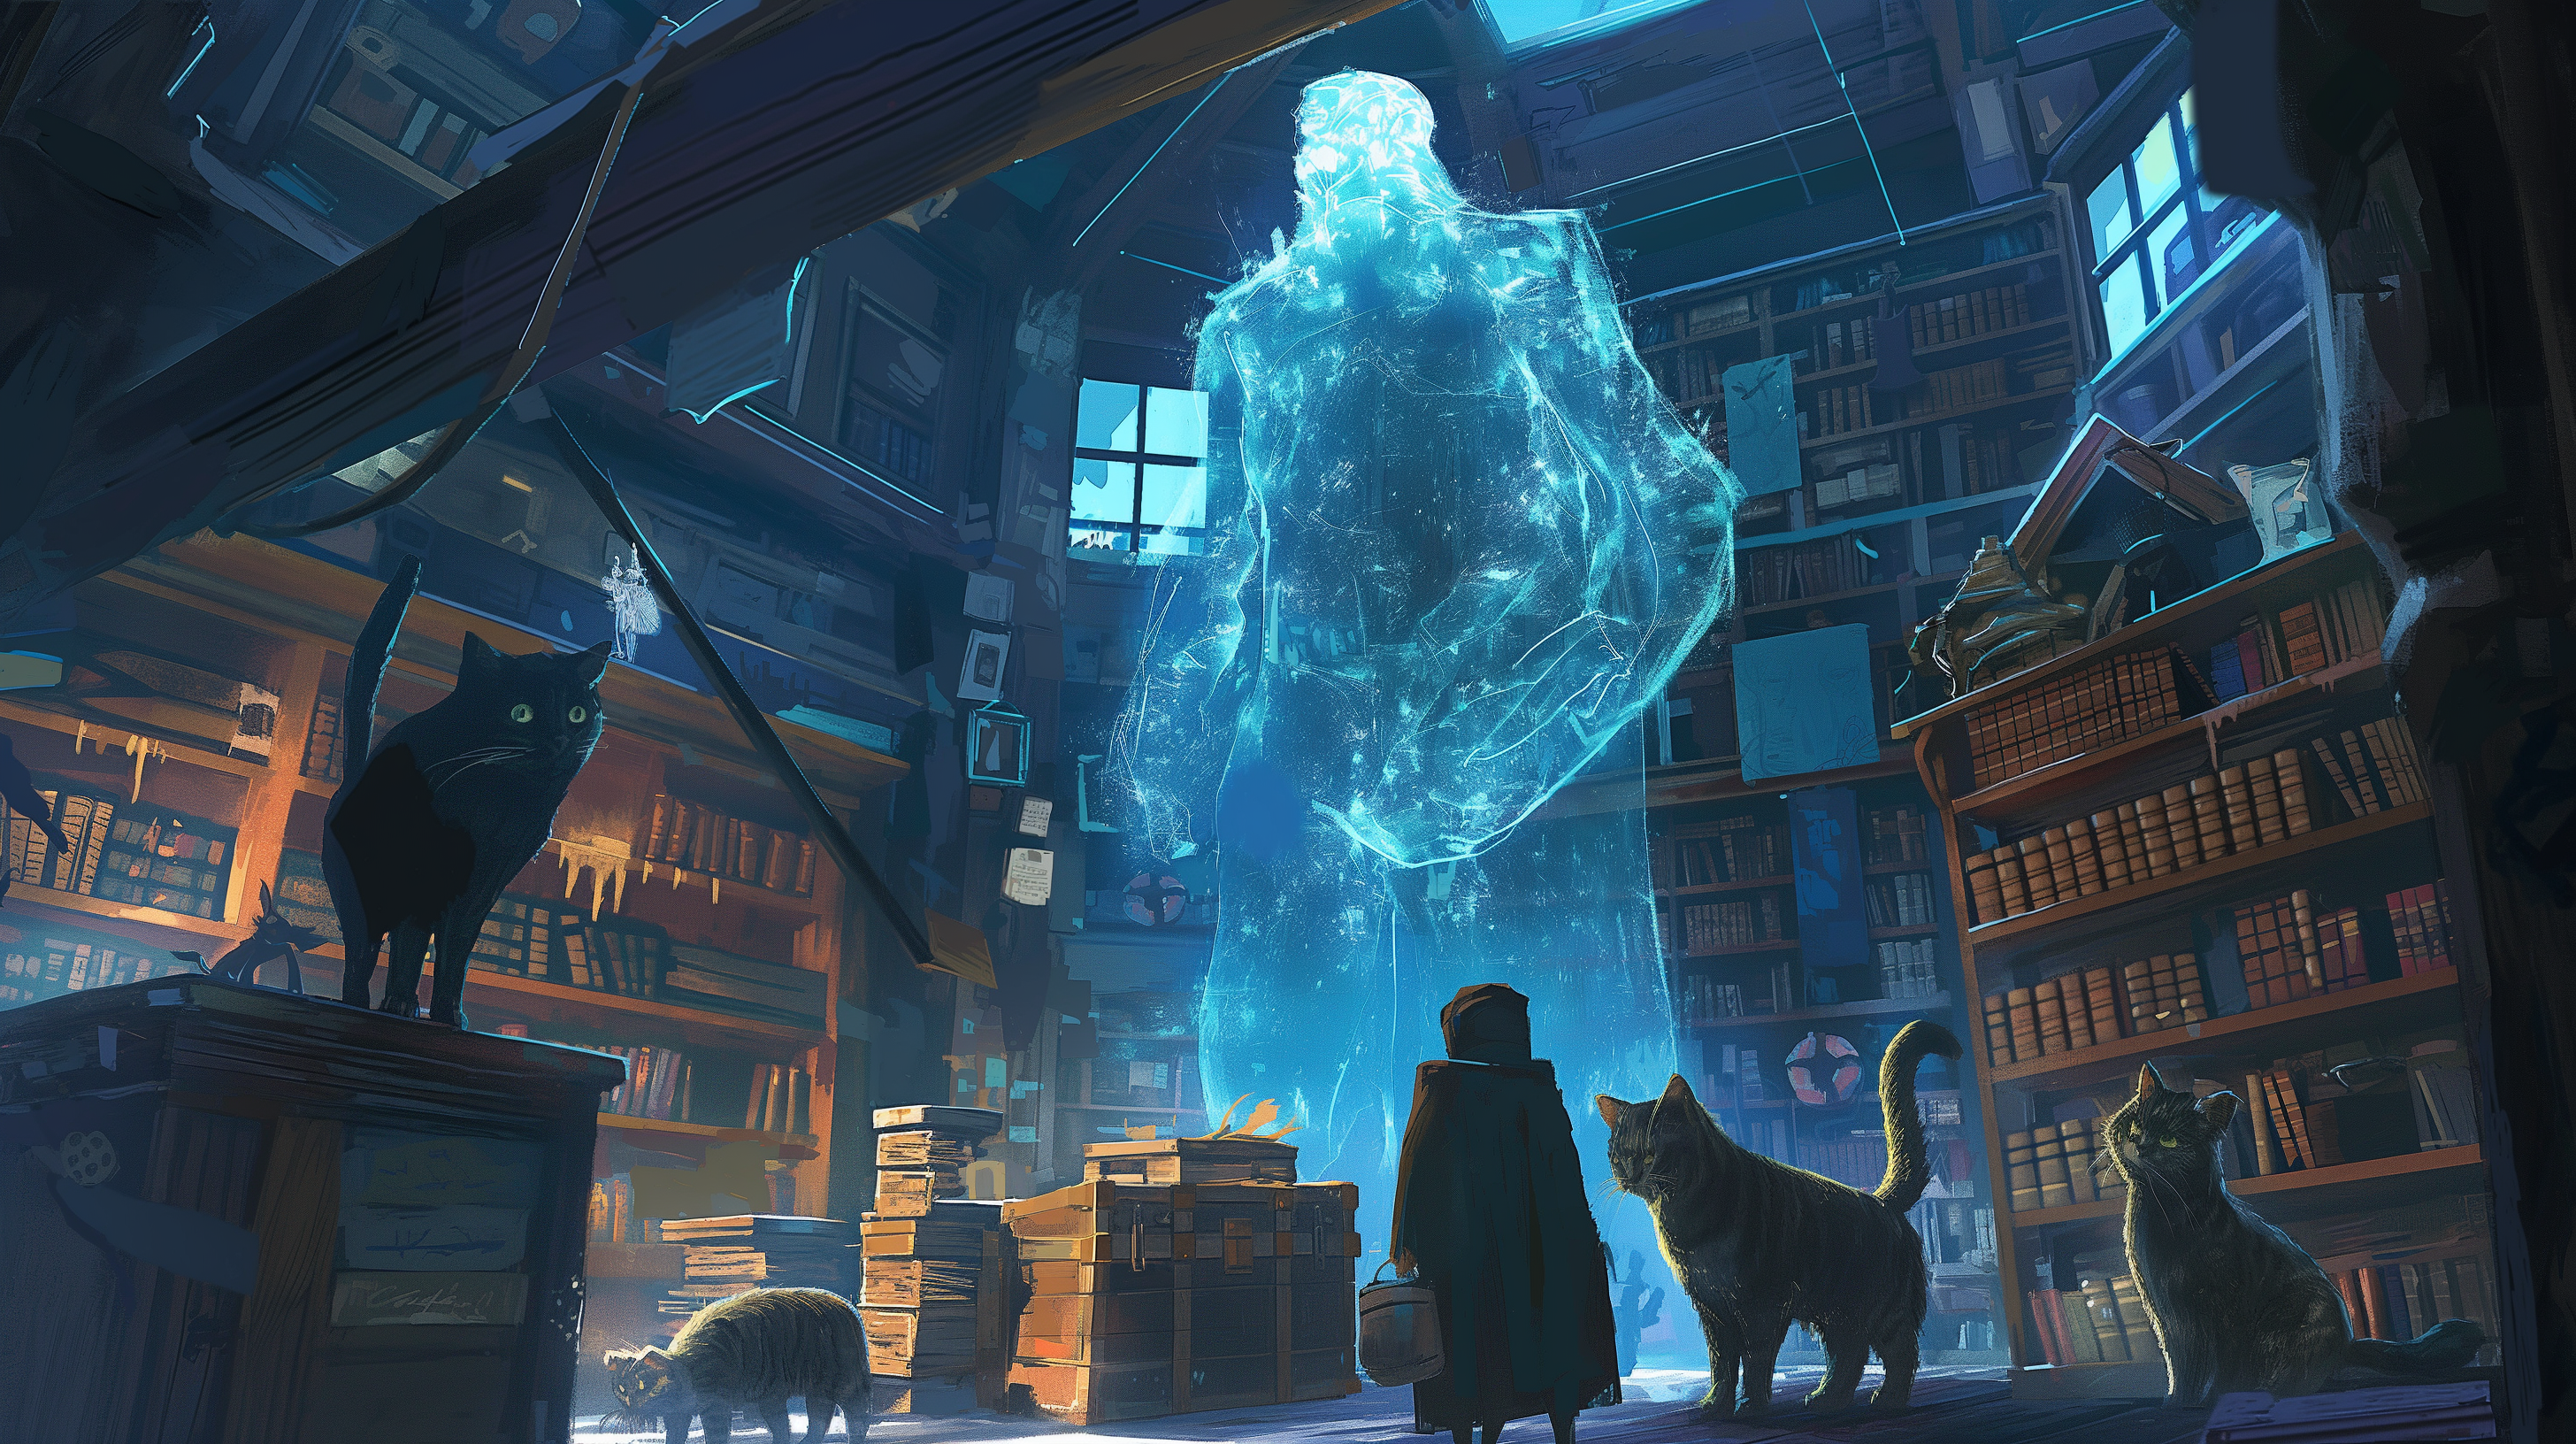 Ein Mensch und drei Katzen in einem überfüllten Bücherzimmer, fasziniert von einer großen, leuchtenden, gespenstischen Figur.